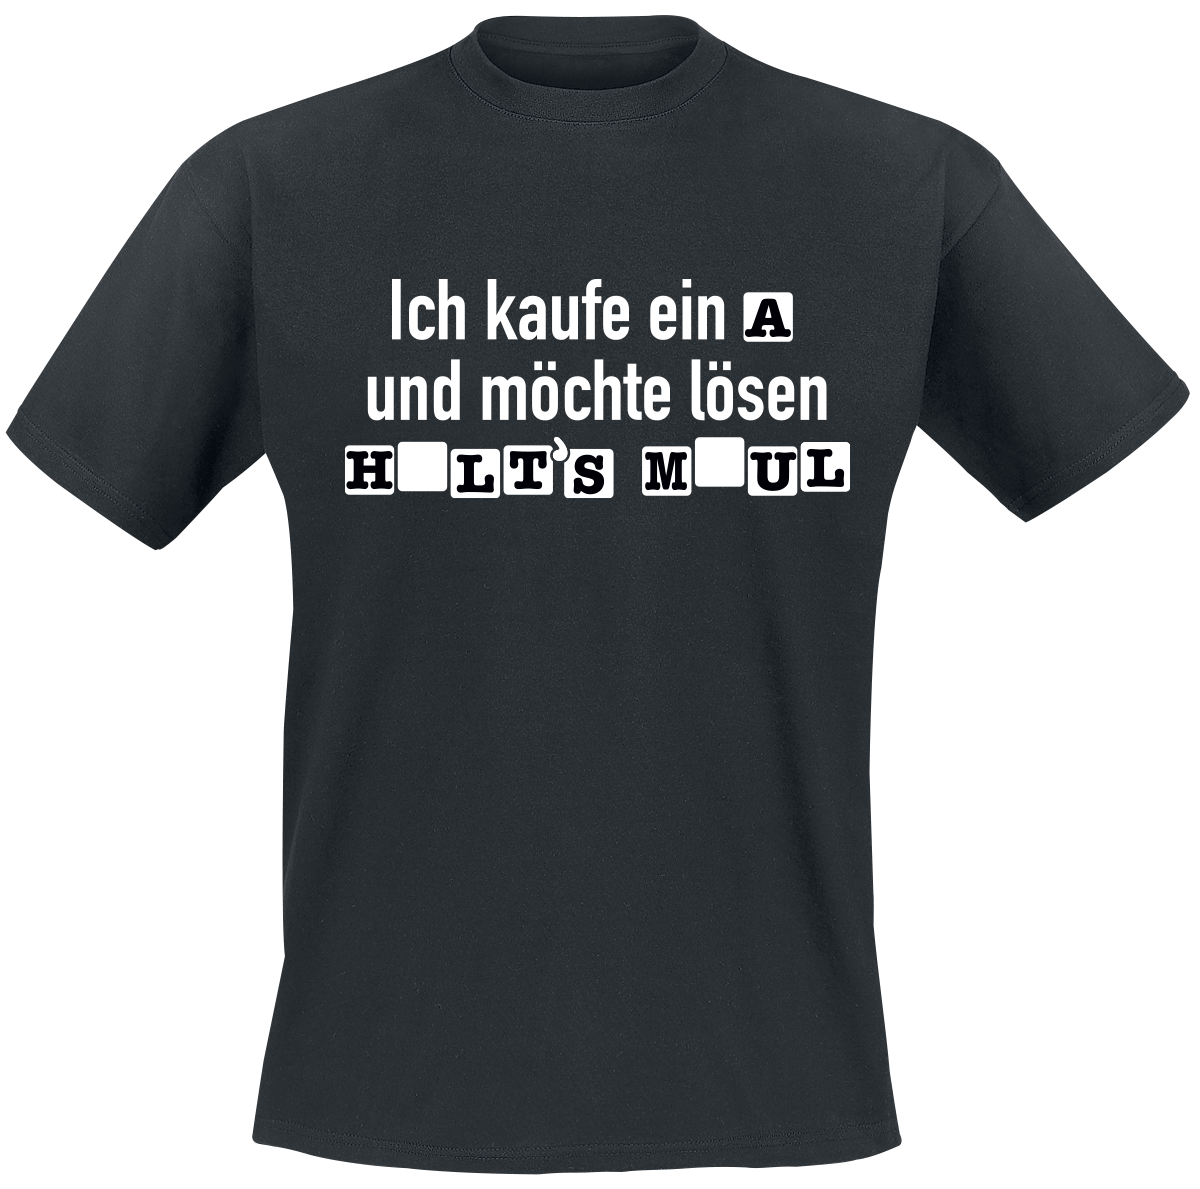 Sprüche - Ich kaufe ein A und möchte lösen - T-Shirt - schwarz - EMP Exklusiv!